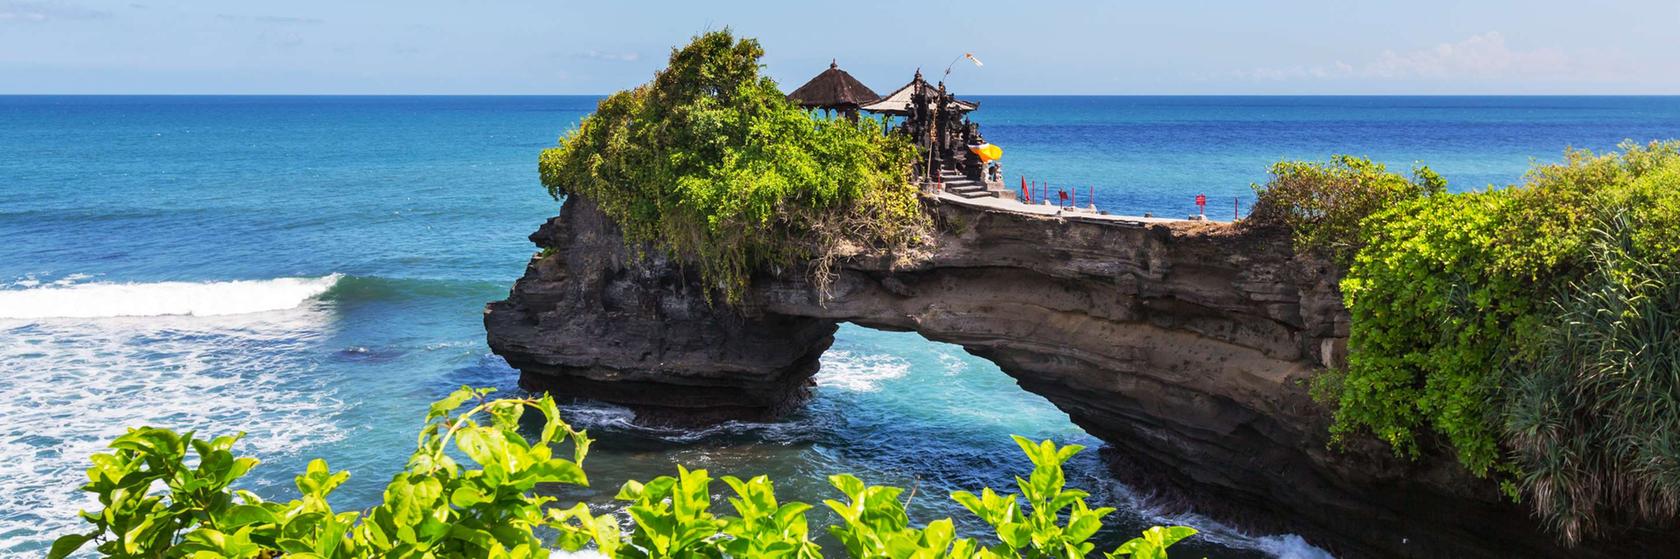 Místa na Bali, které musíte navštívit